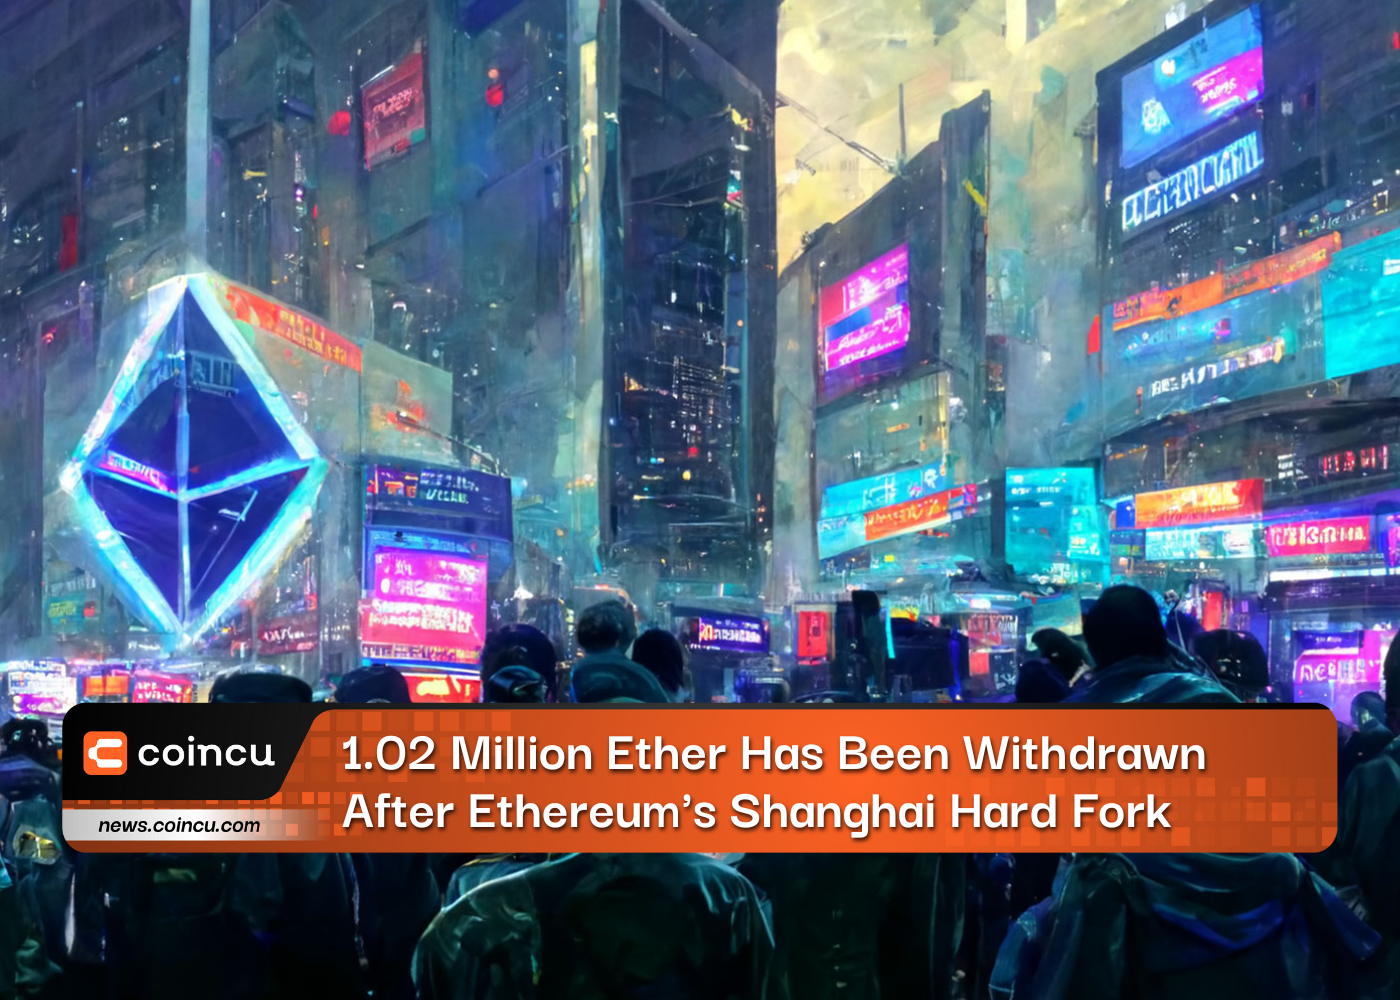 Se han retirado 1.02 millones de Ether después de la bifurcación dura de Ethereum en Shanghai